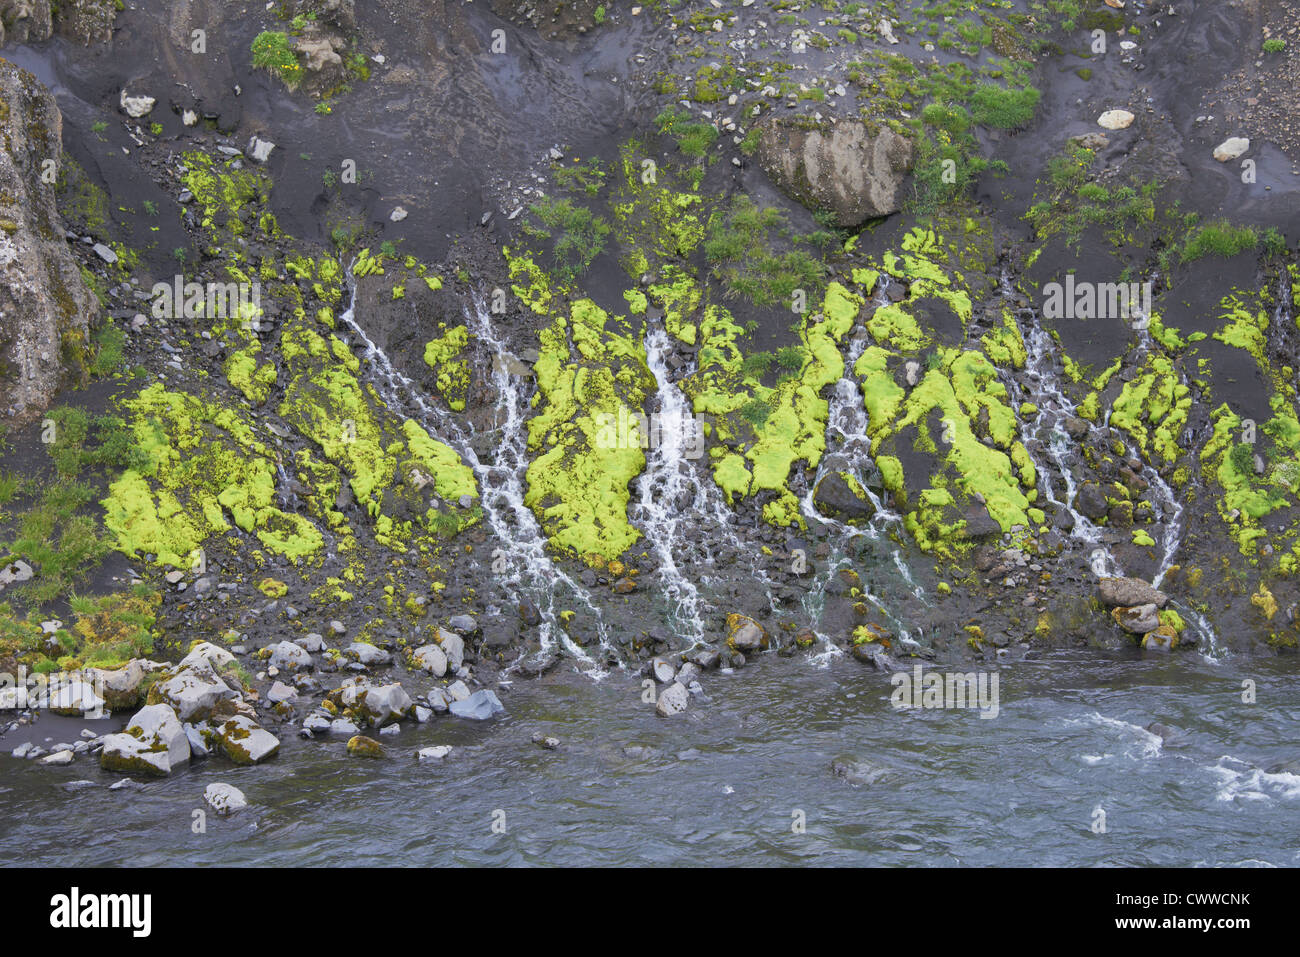 Frozen streams on rocky hillside Stock Photo